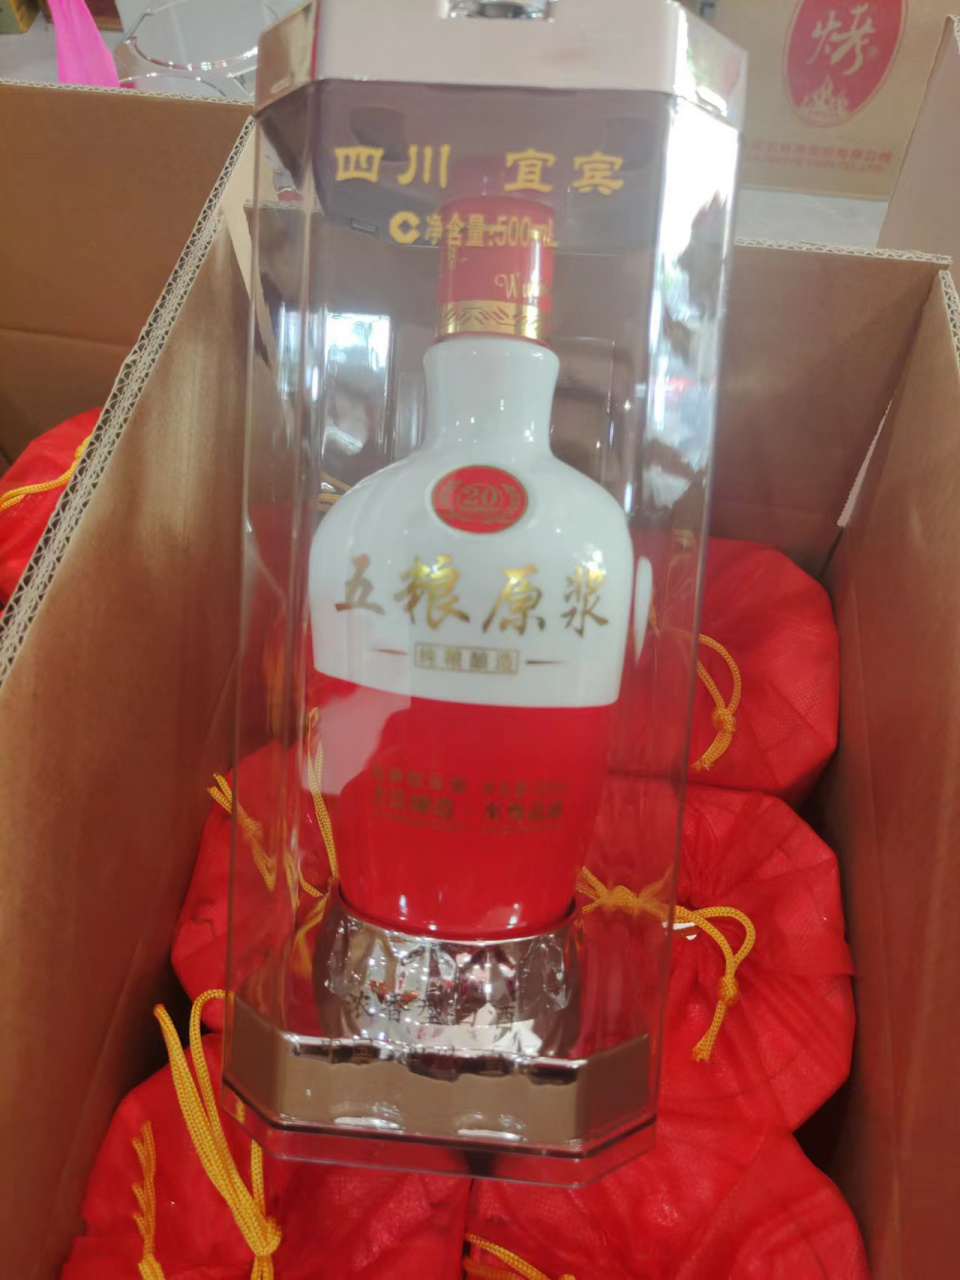 中国酒源五粮原浆图片